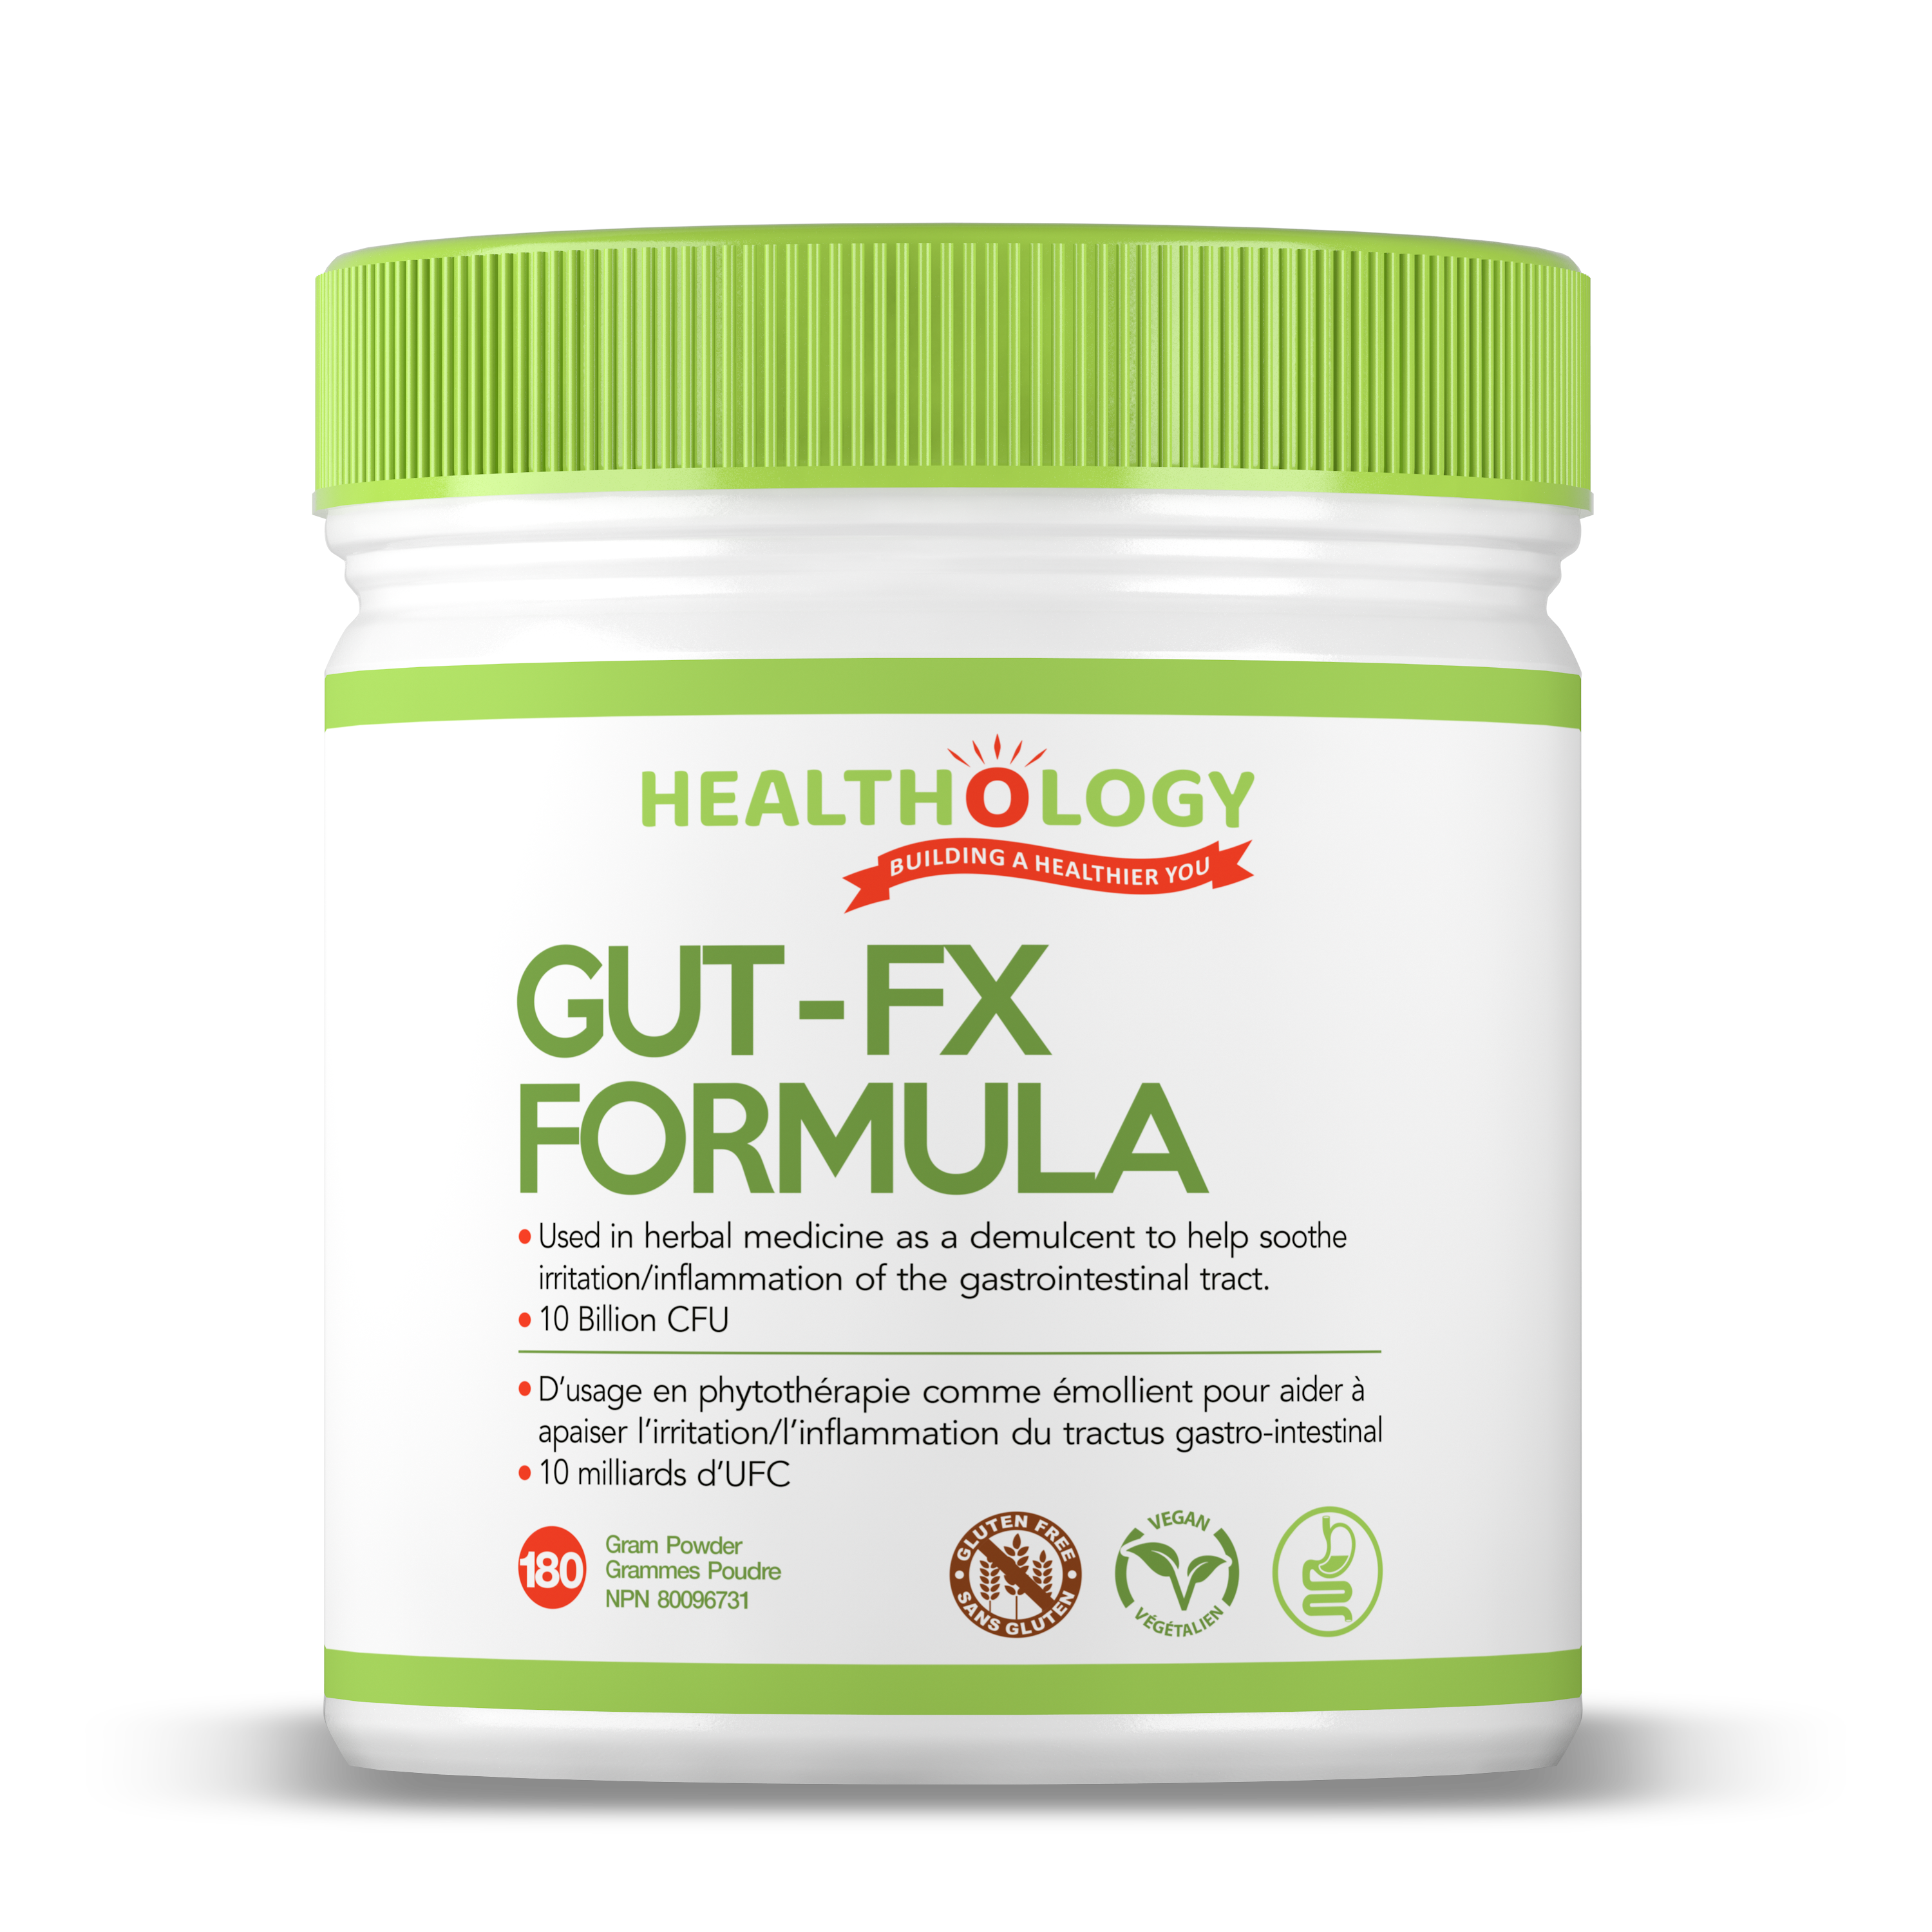 Healthology Gut-FX Formula 180g